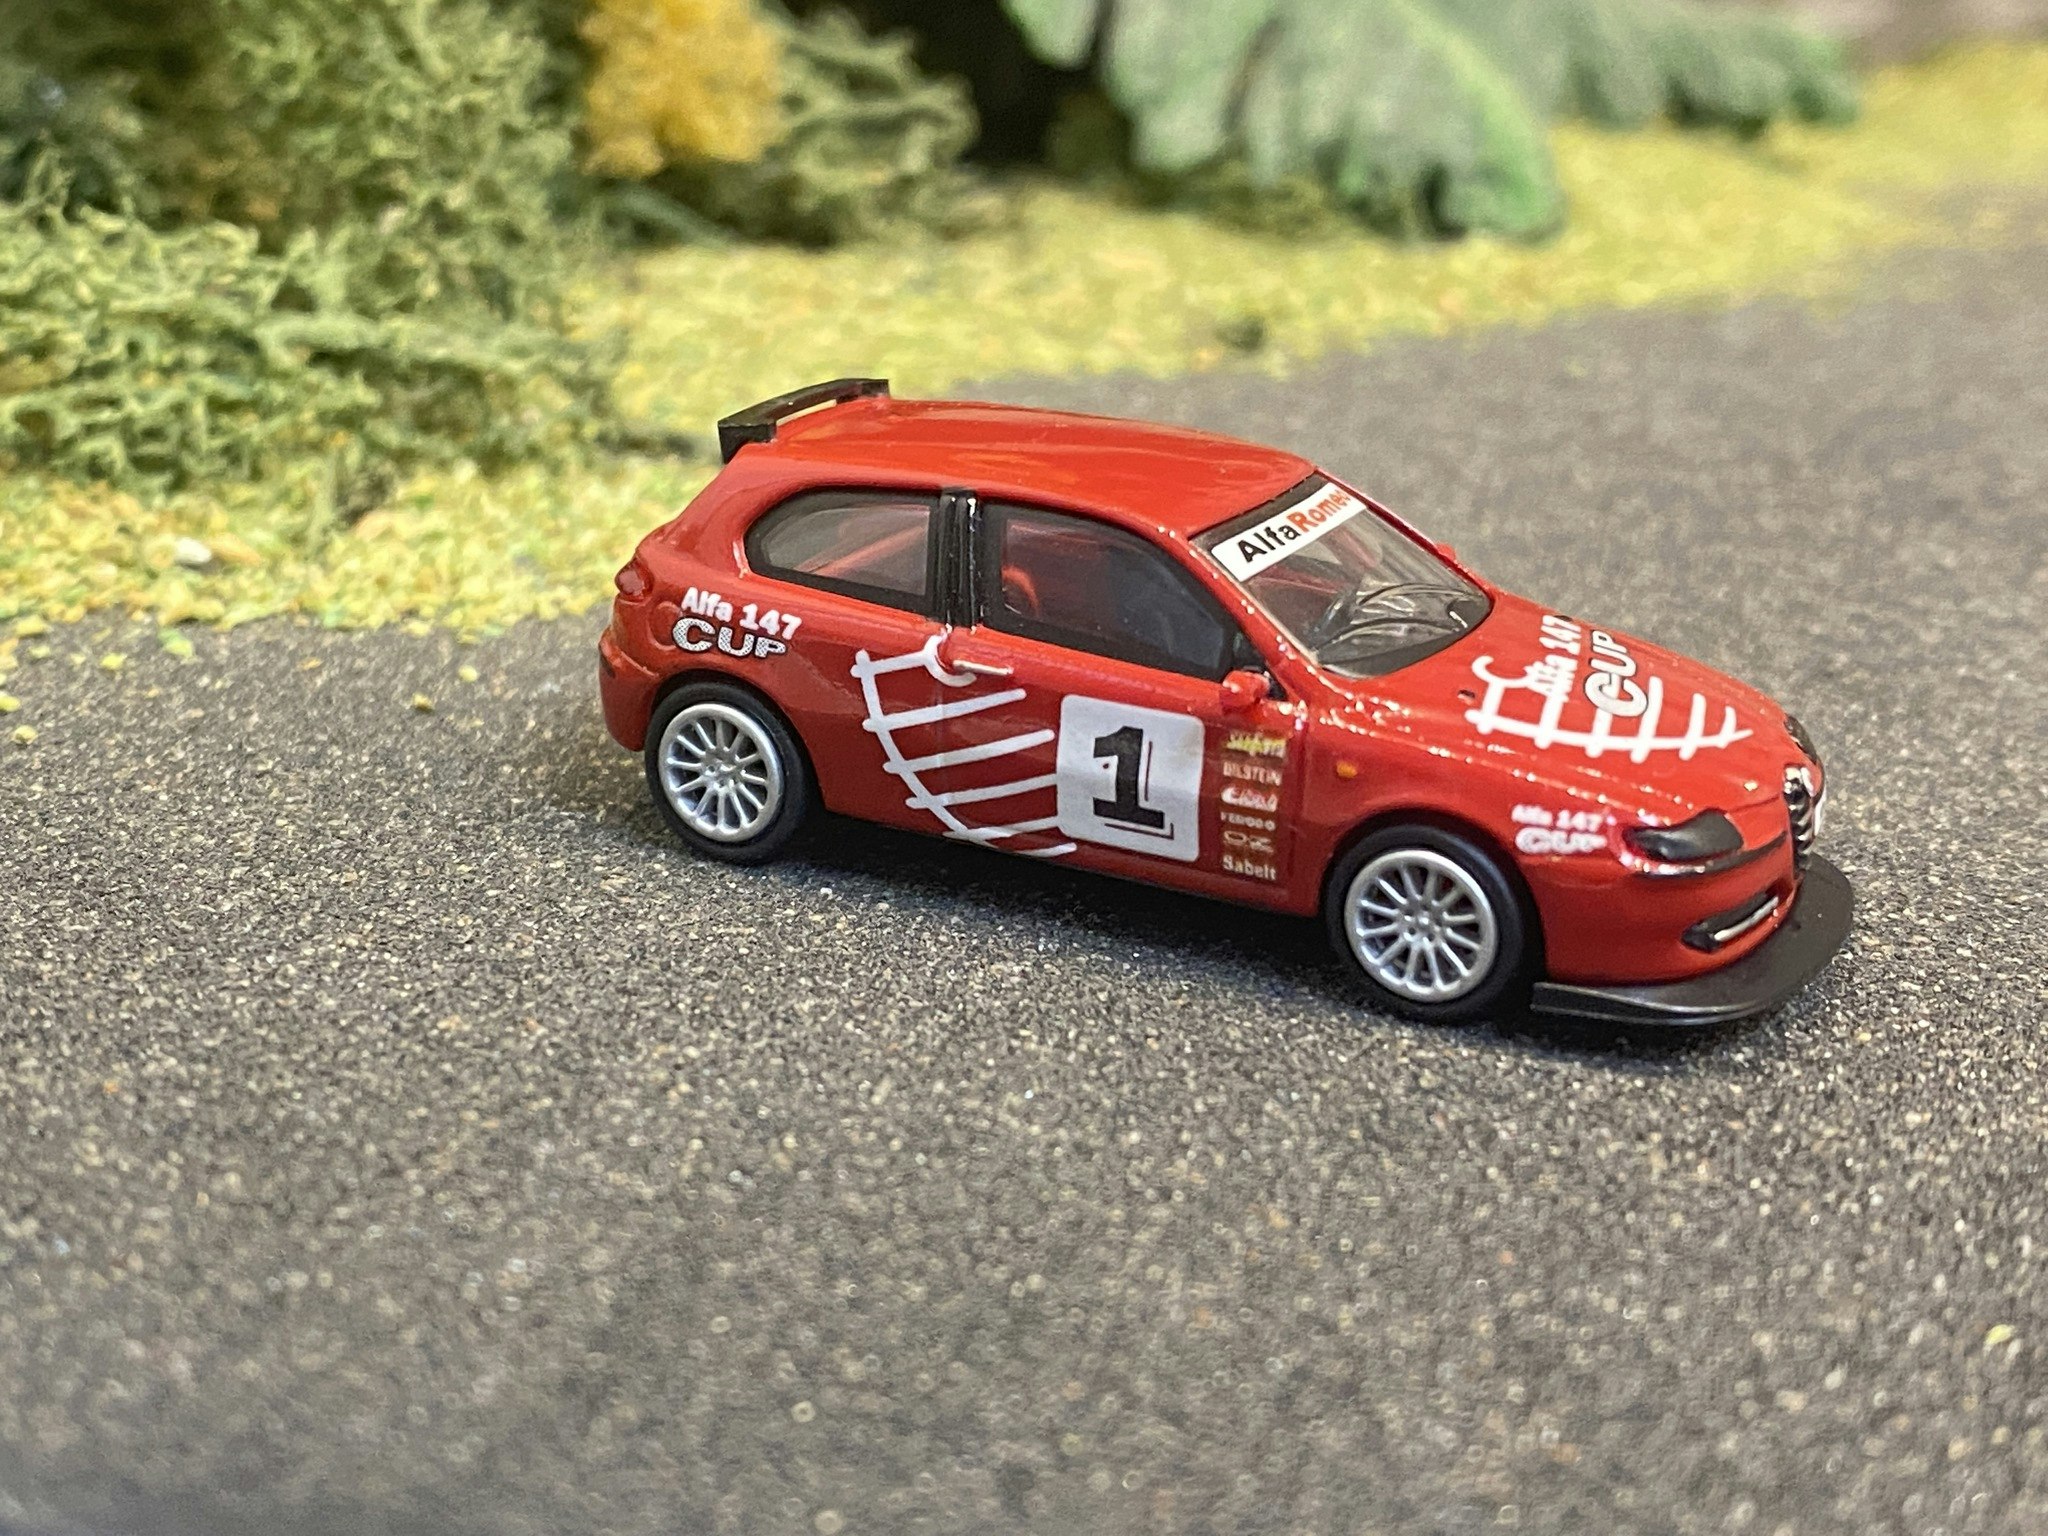 Skala 1/87 - Alfa Romeo 147, Röd "Racing" från Ricko Ricko